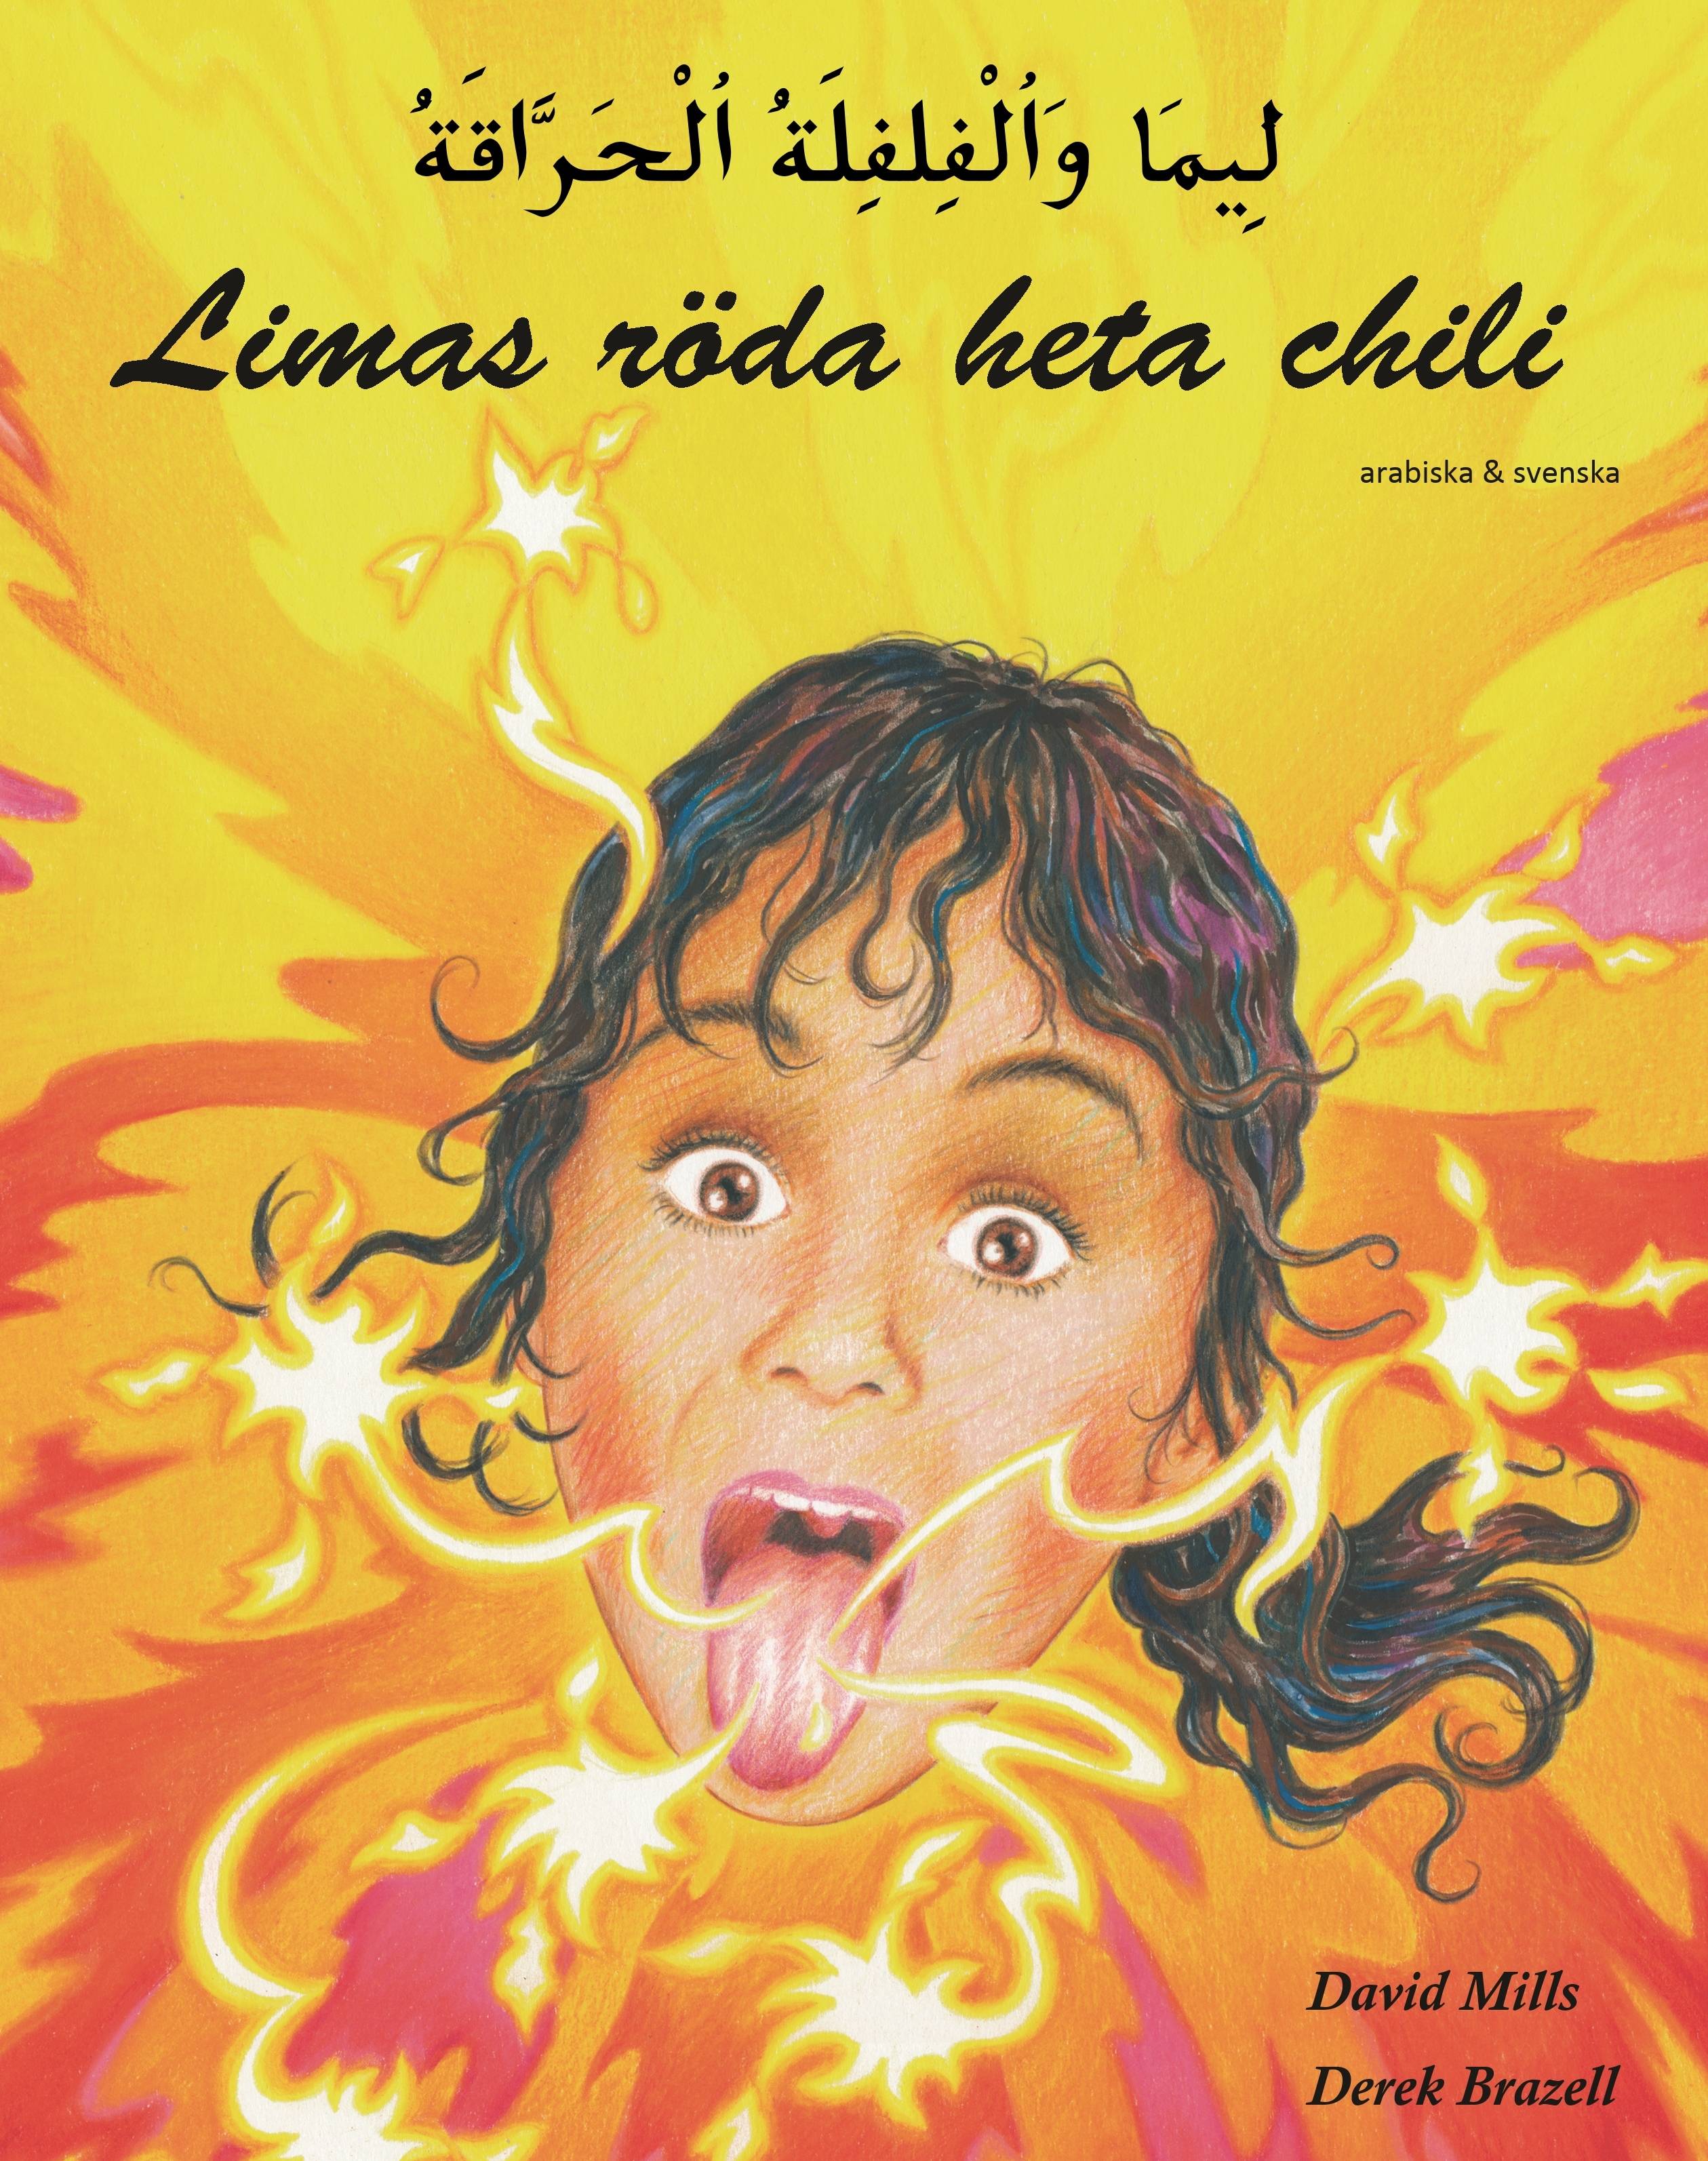 Limas röda heta chili (arabiska och svenska)